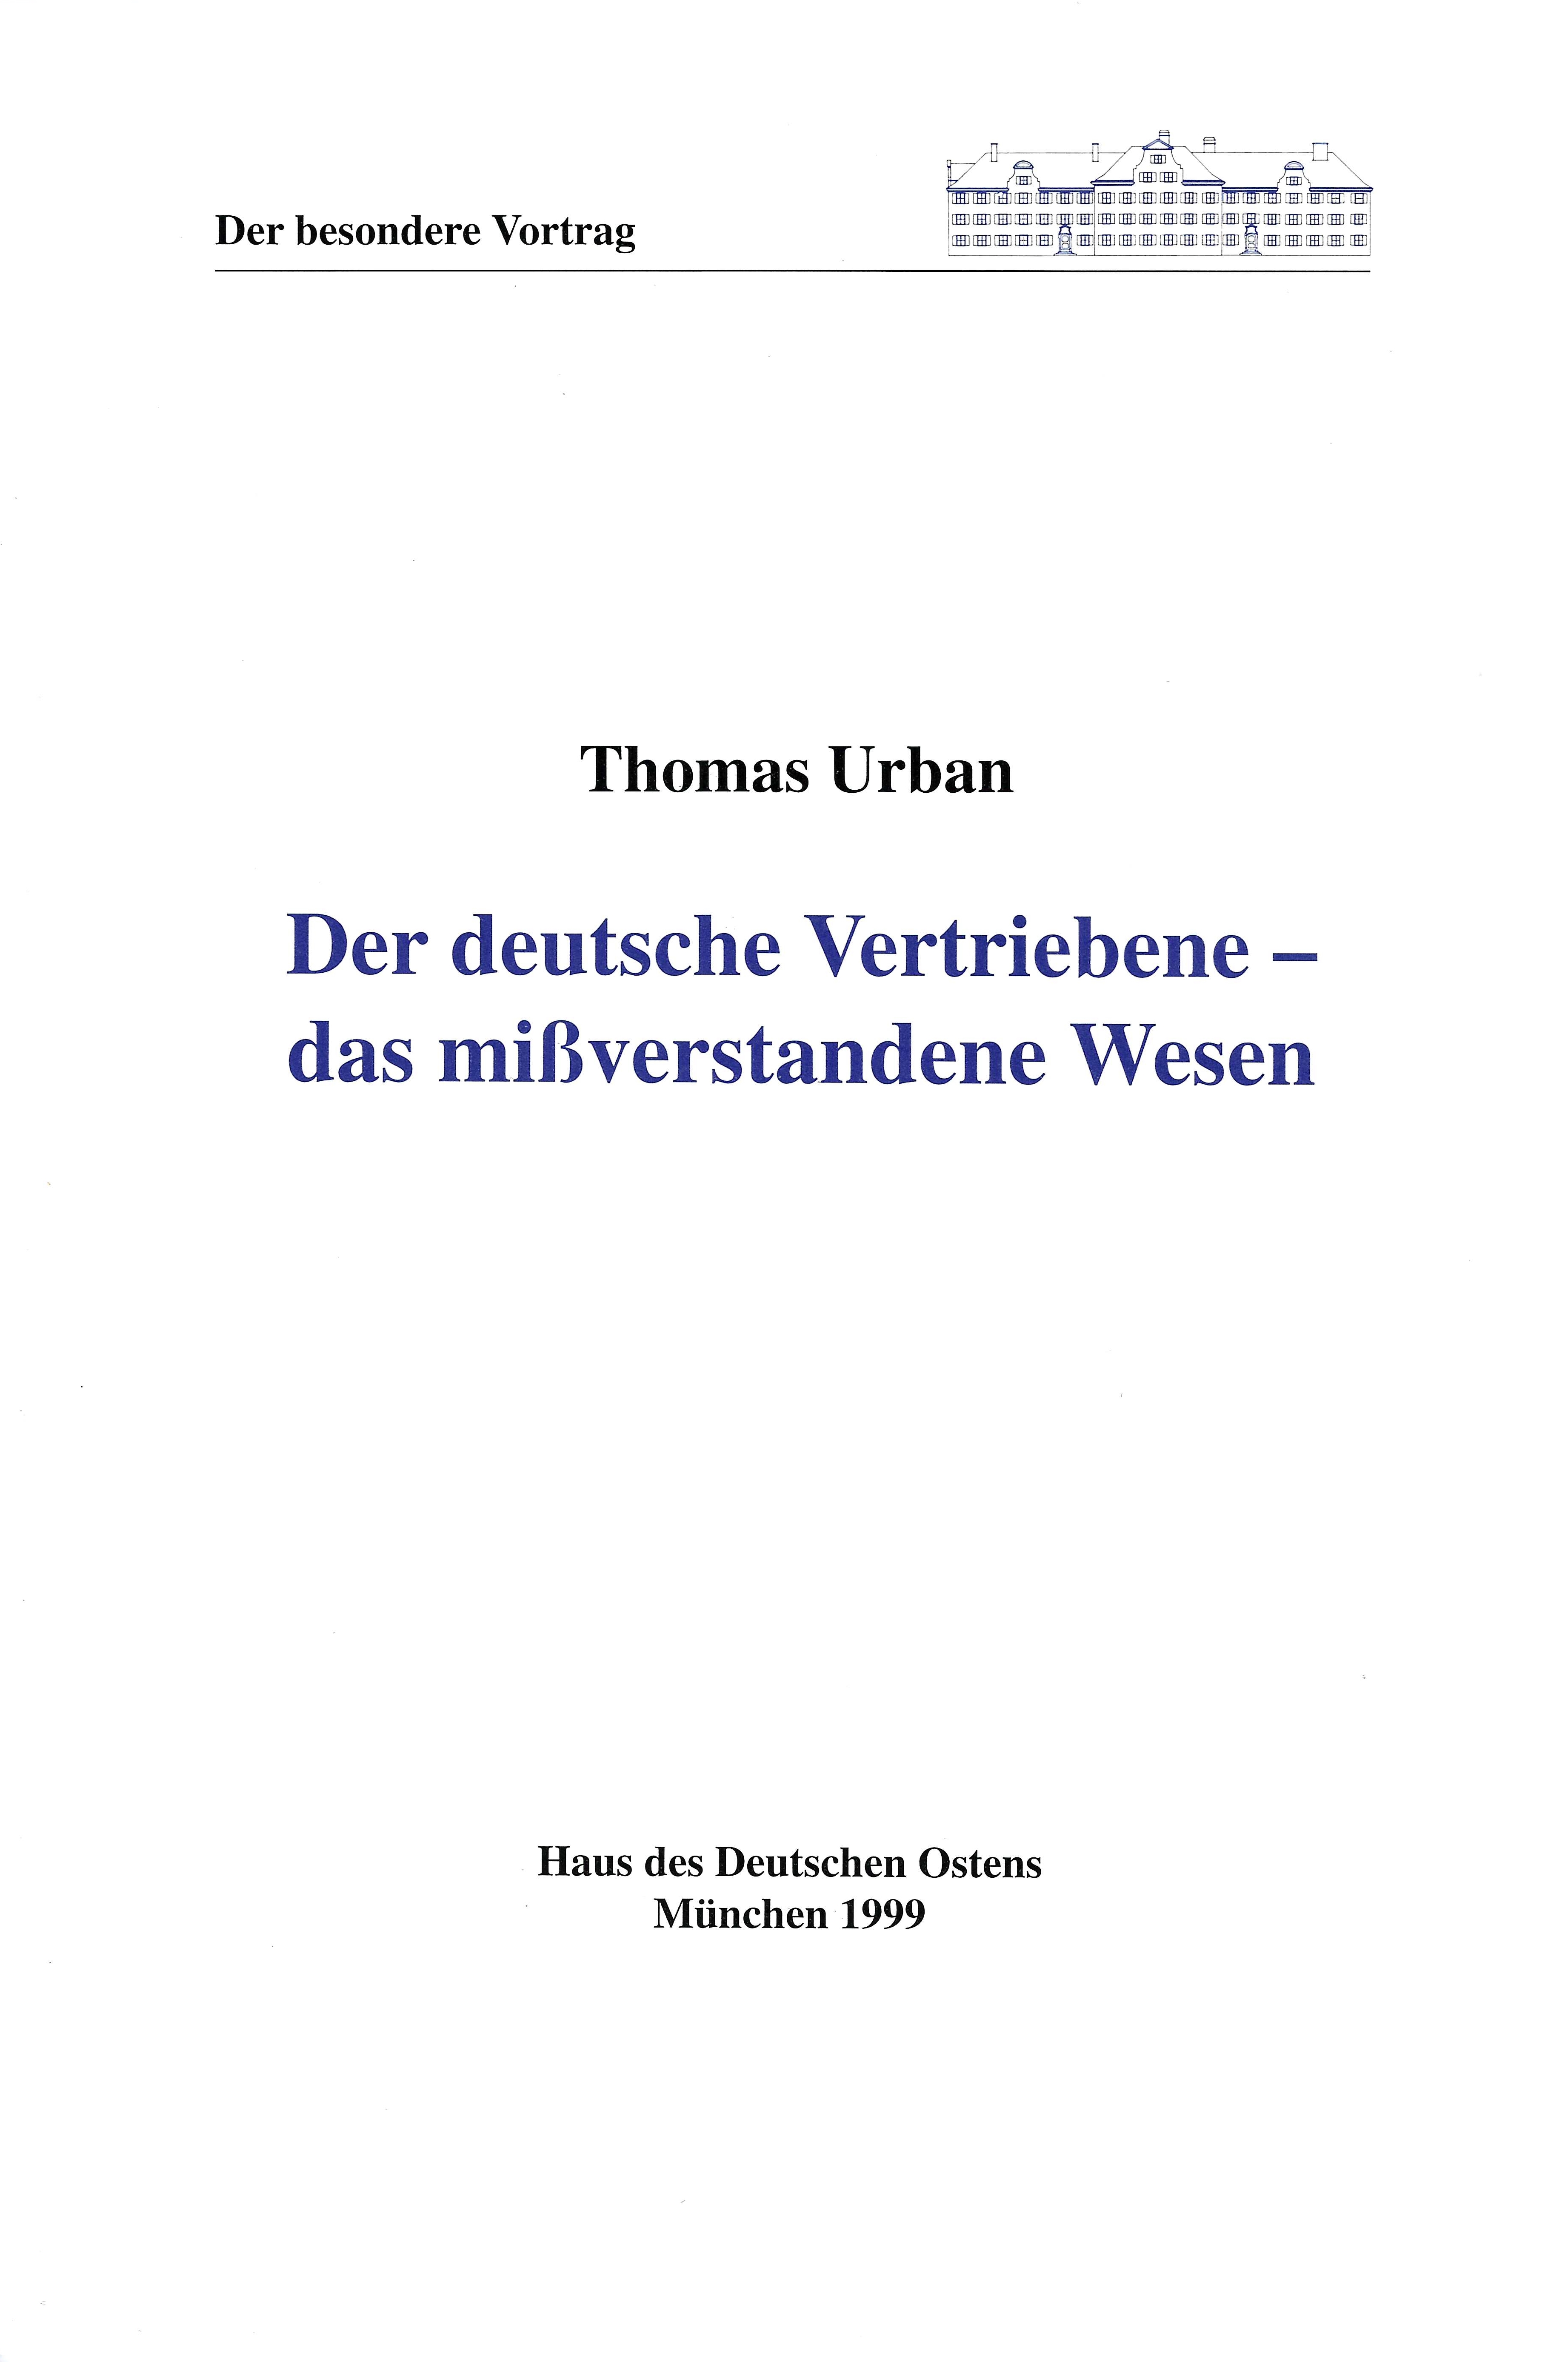 Thomas Urban: Der deutsche Vertriebene - das mißverstandene Wesen